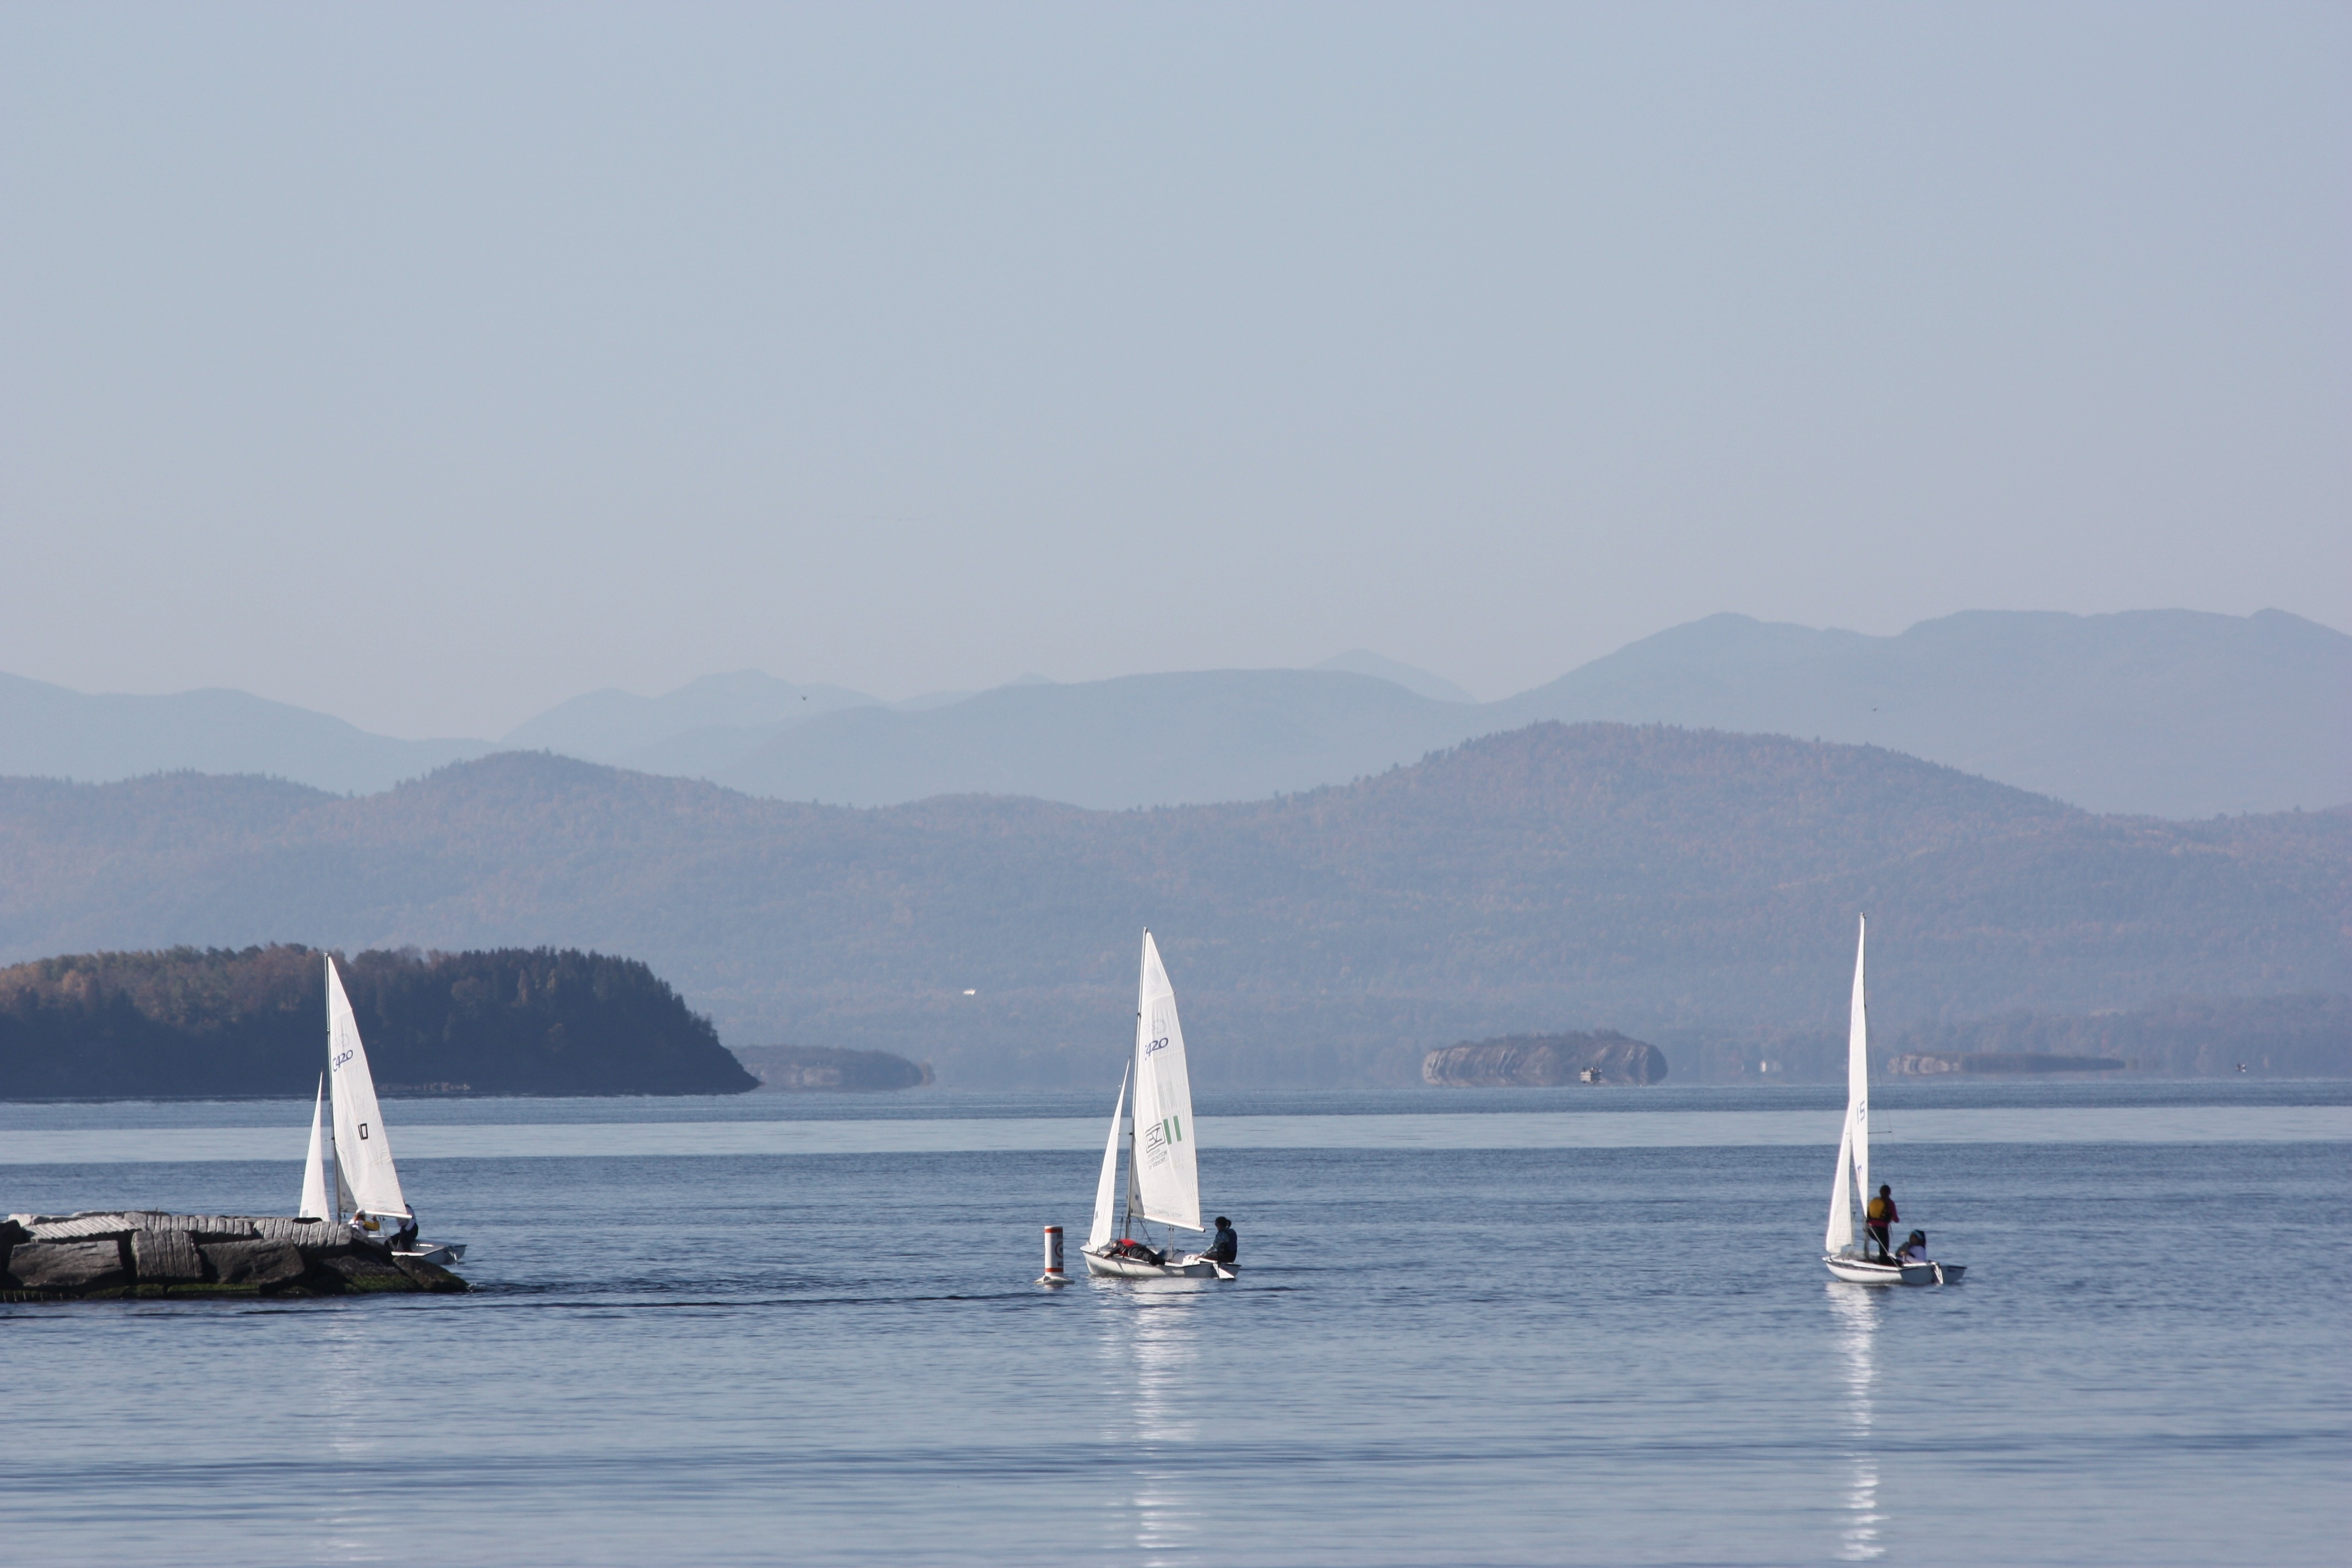 3 white sailboats